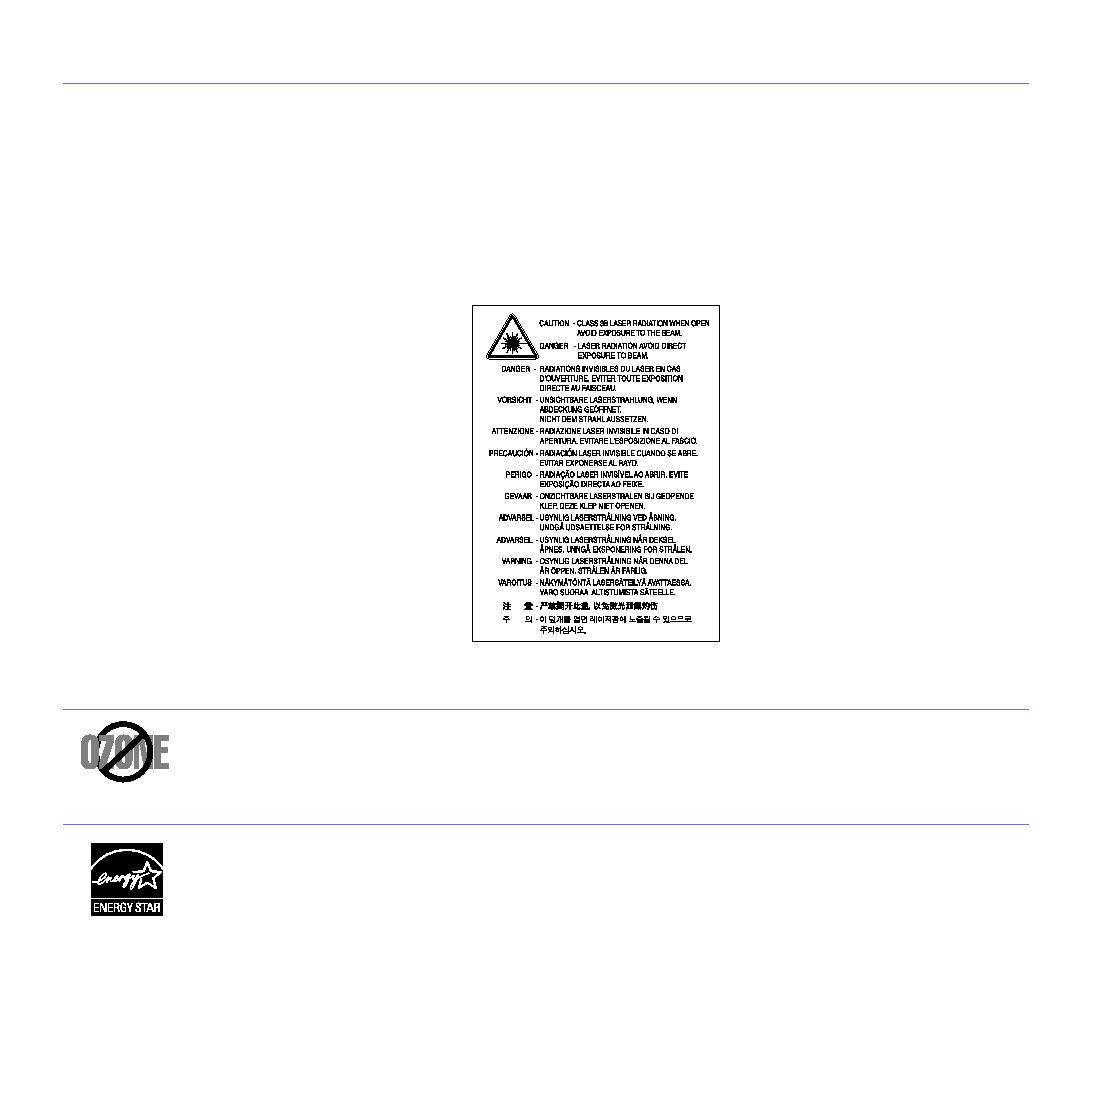 Samsung SCX-4300 User Manual (ver.3.00)